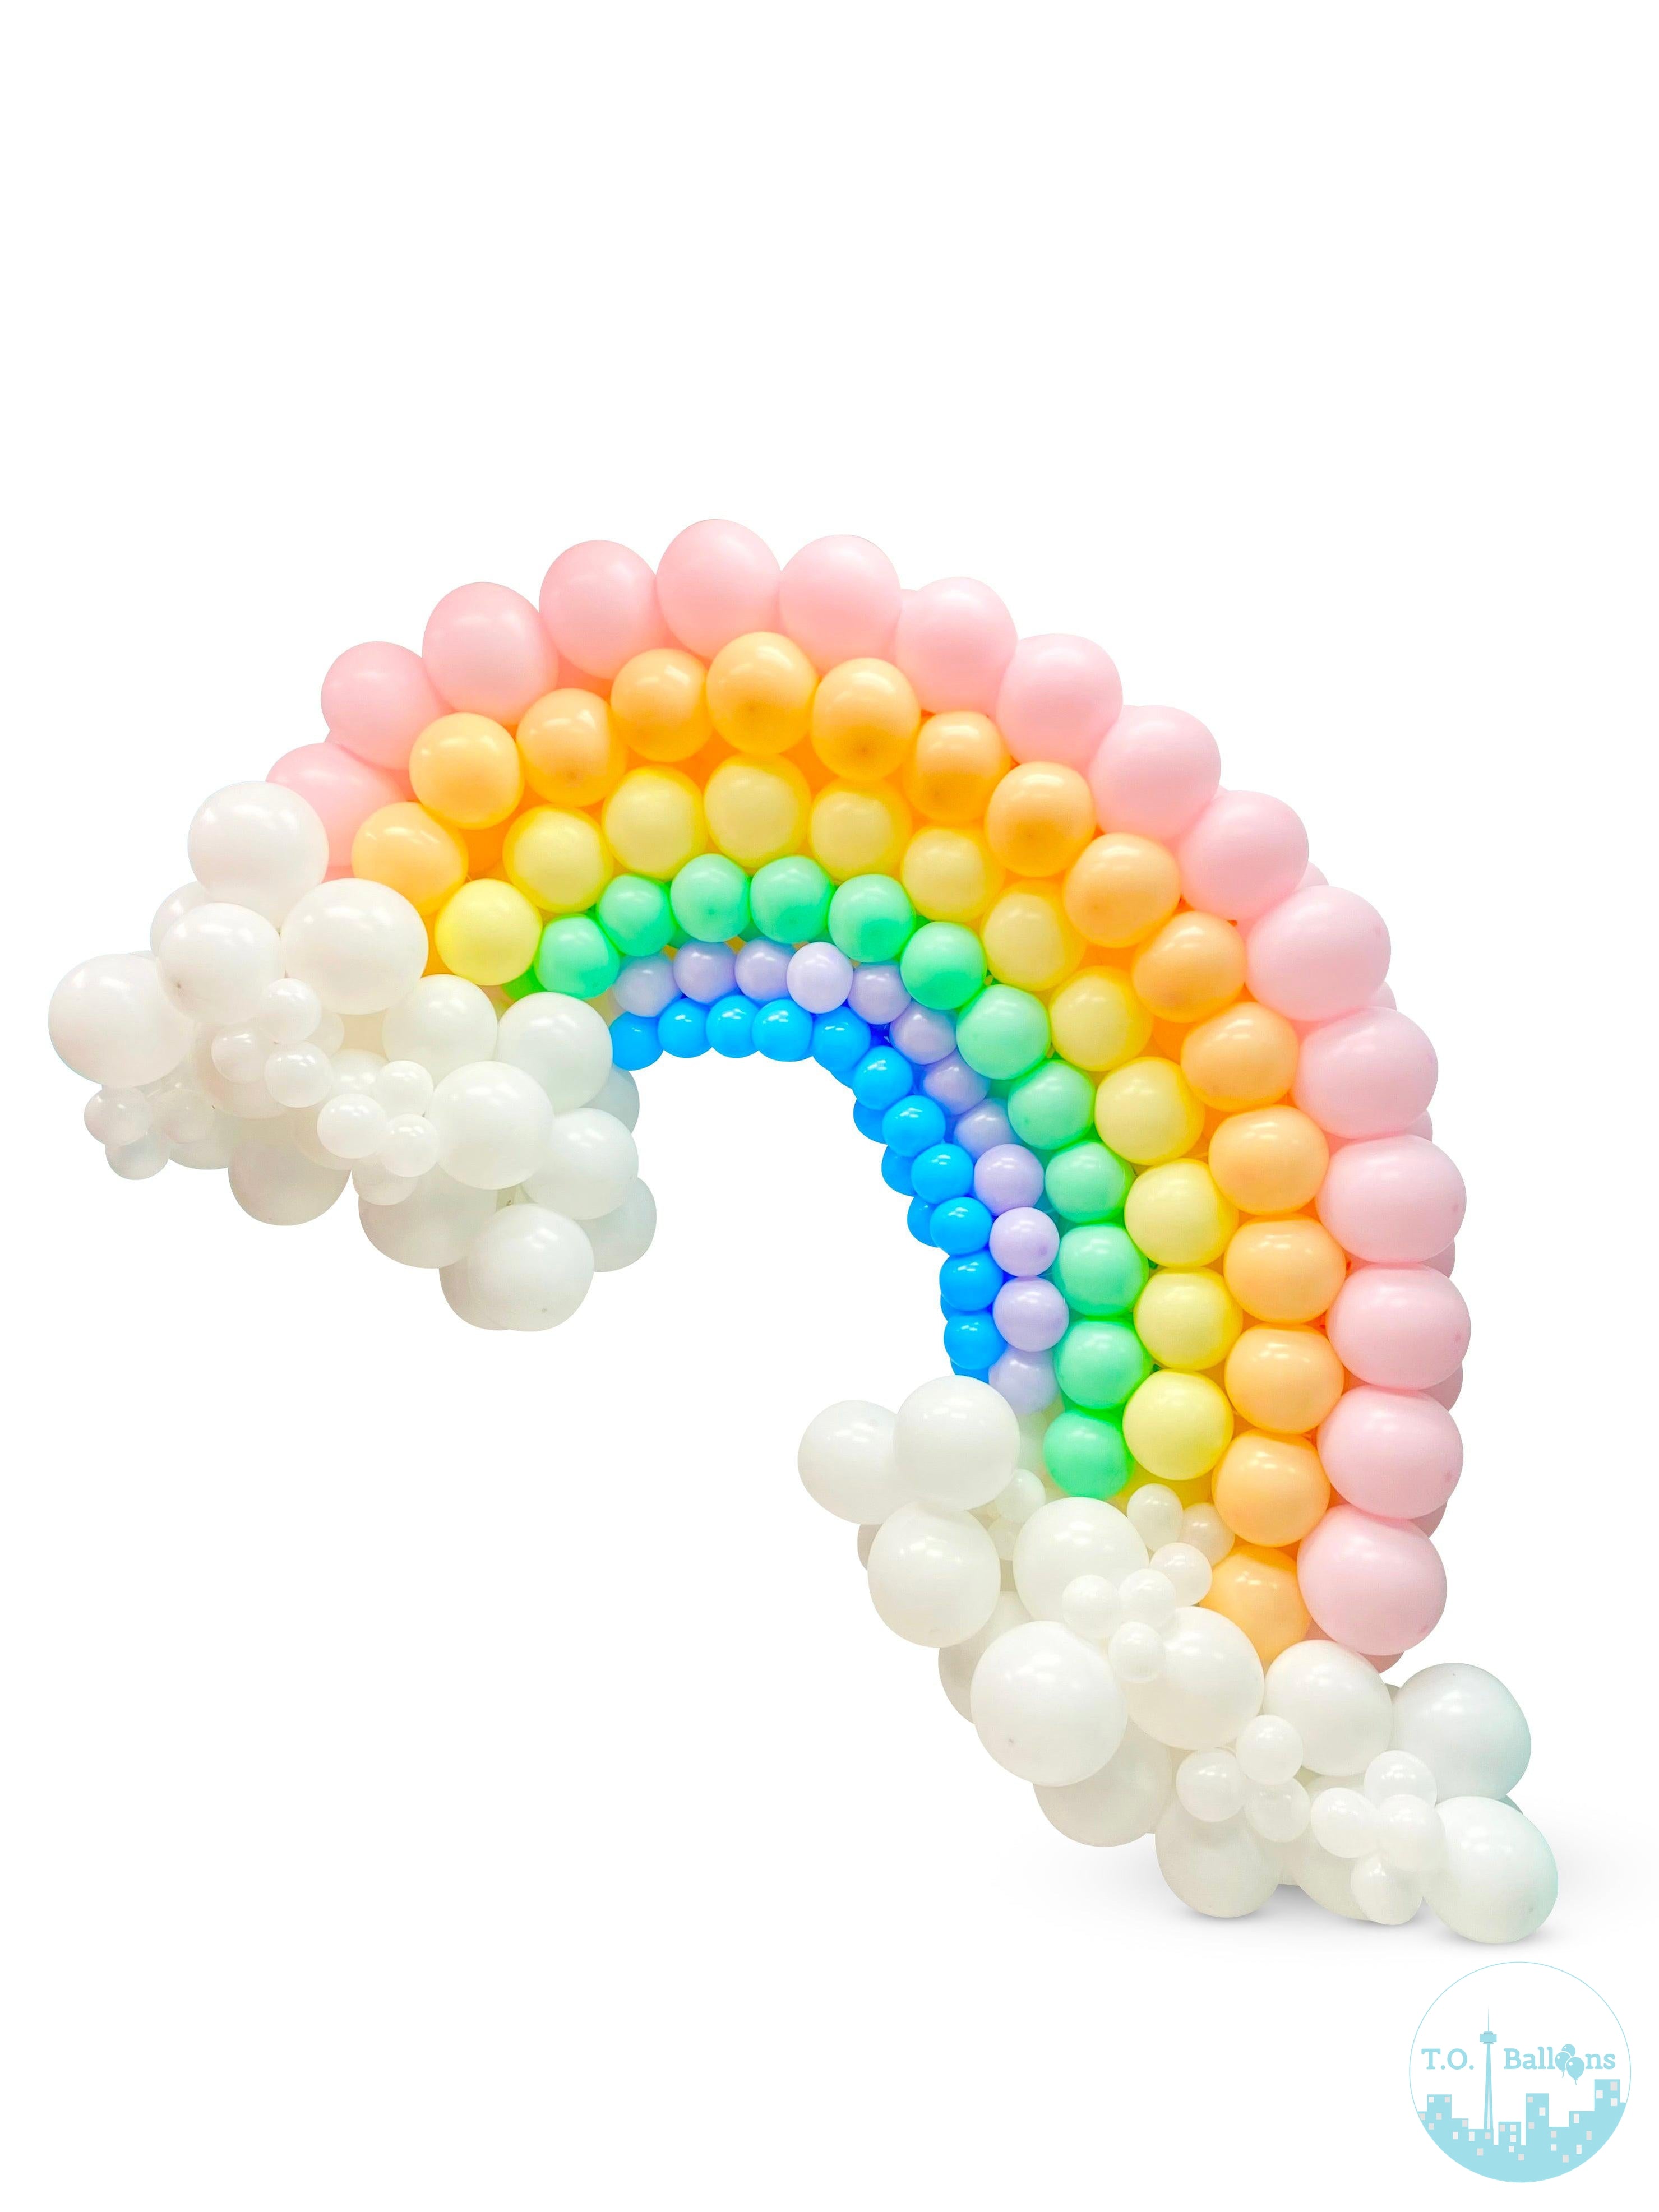 Rainbow Balloons -Toronto Balloons